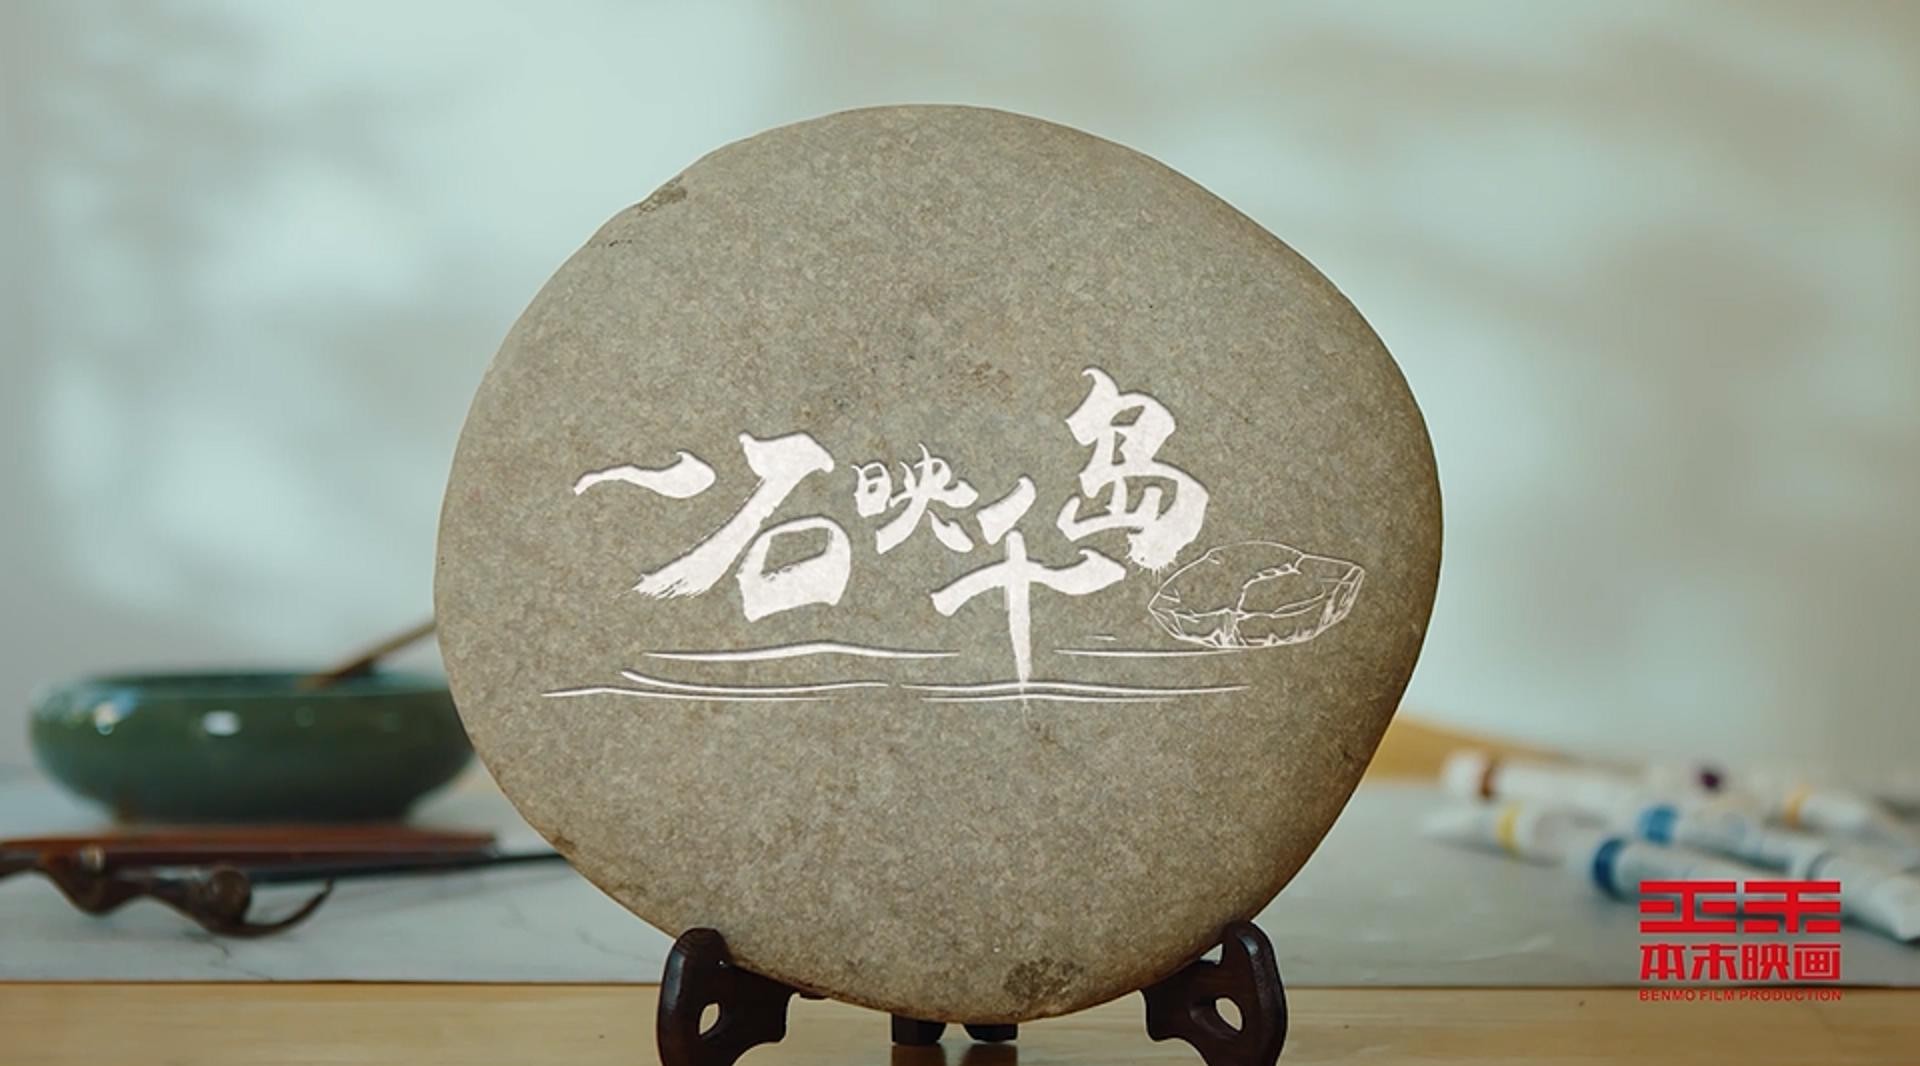 千岛湖旅游系列宣传片——《一石映千岛》 